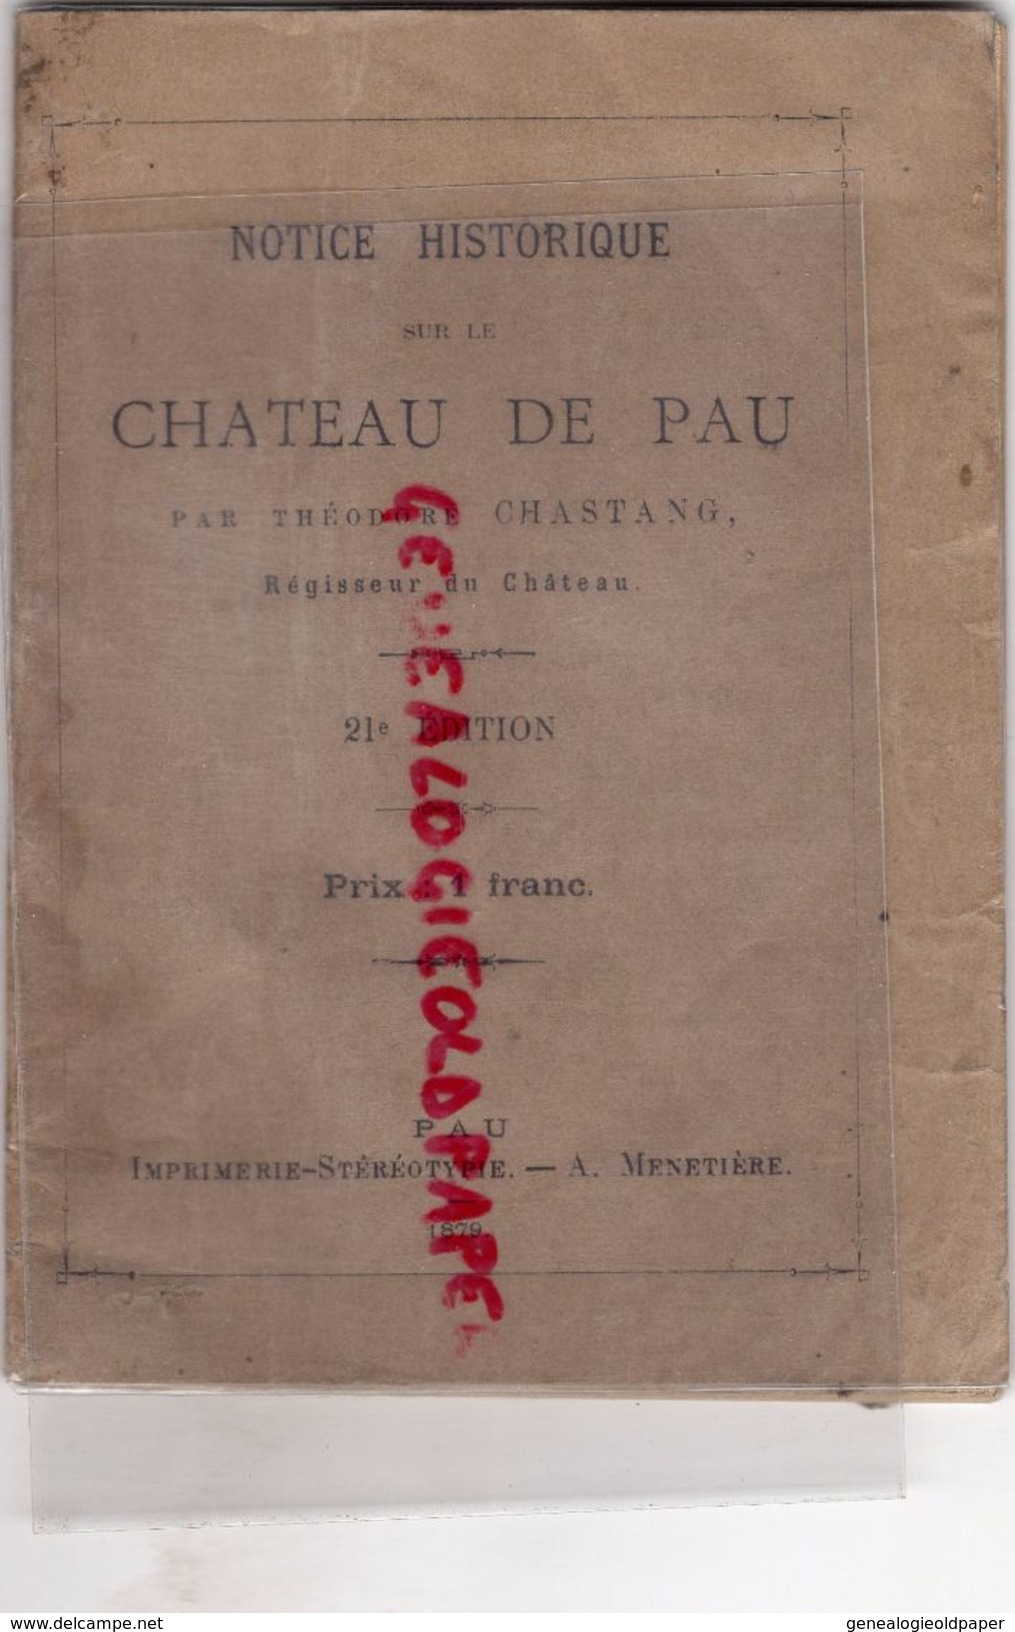 64- RARE NOTICE HISTORIQUE CHATEAU DE PAU-THEODORE CHASTANG REGISSEUR-IMPRIMERIE A. MENETIERE-1879 - Baskenland